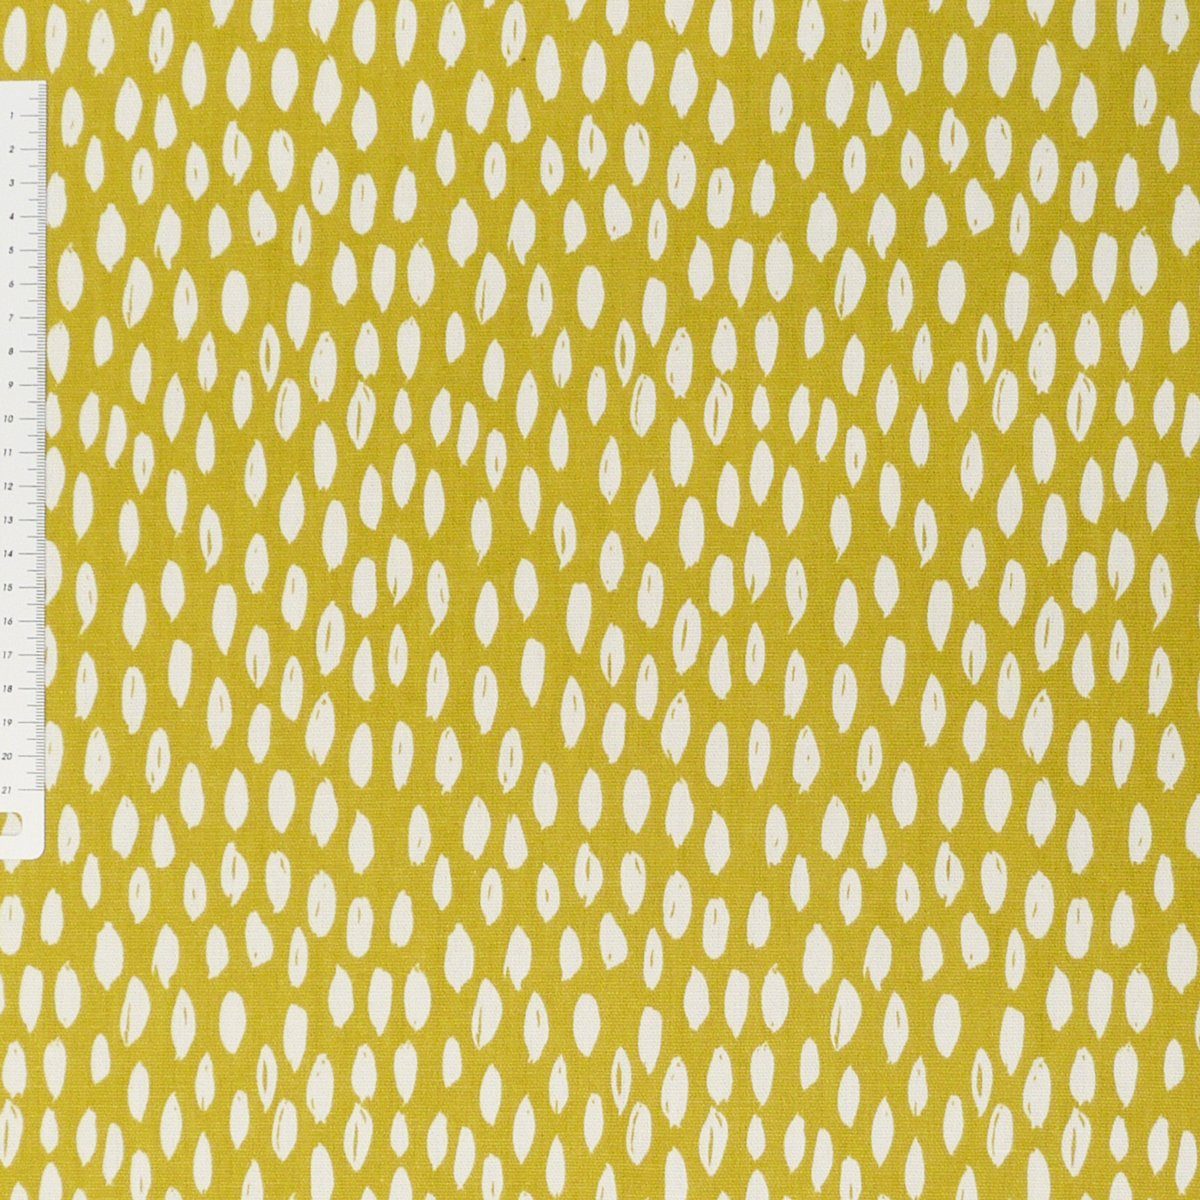 SCHÖNER LEBEN. Tischläufer Schöner Leben Bayside Tischläufer ocker gelb handmade Honeydew 40x160cm, weiß